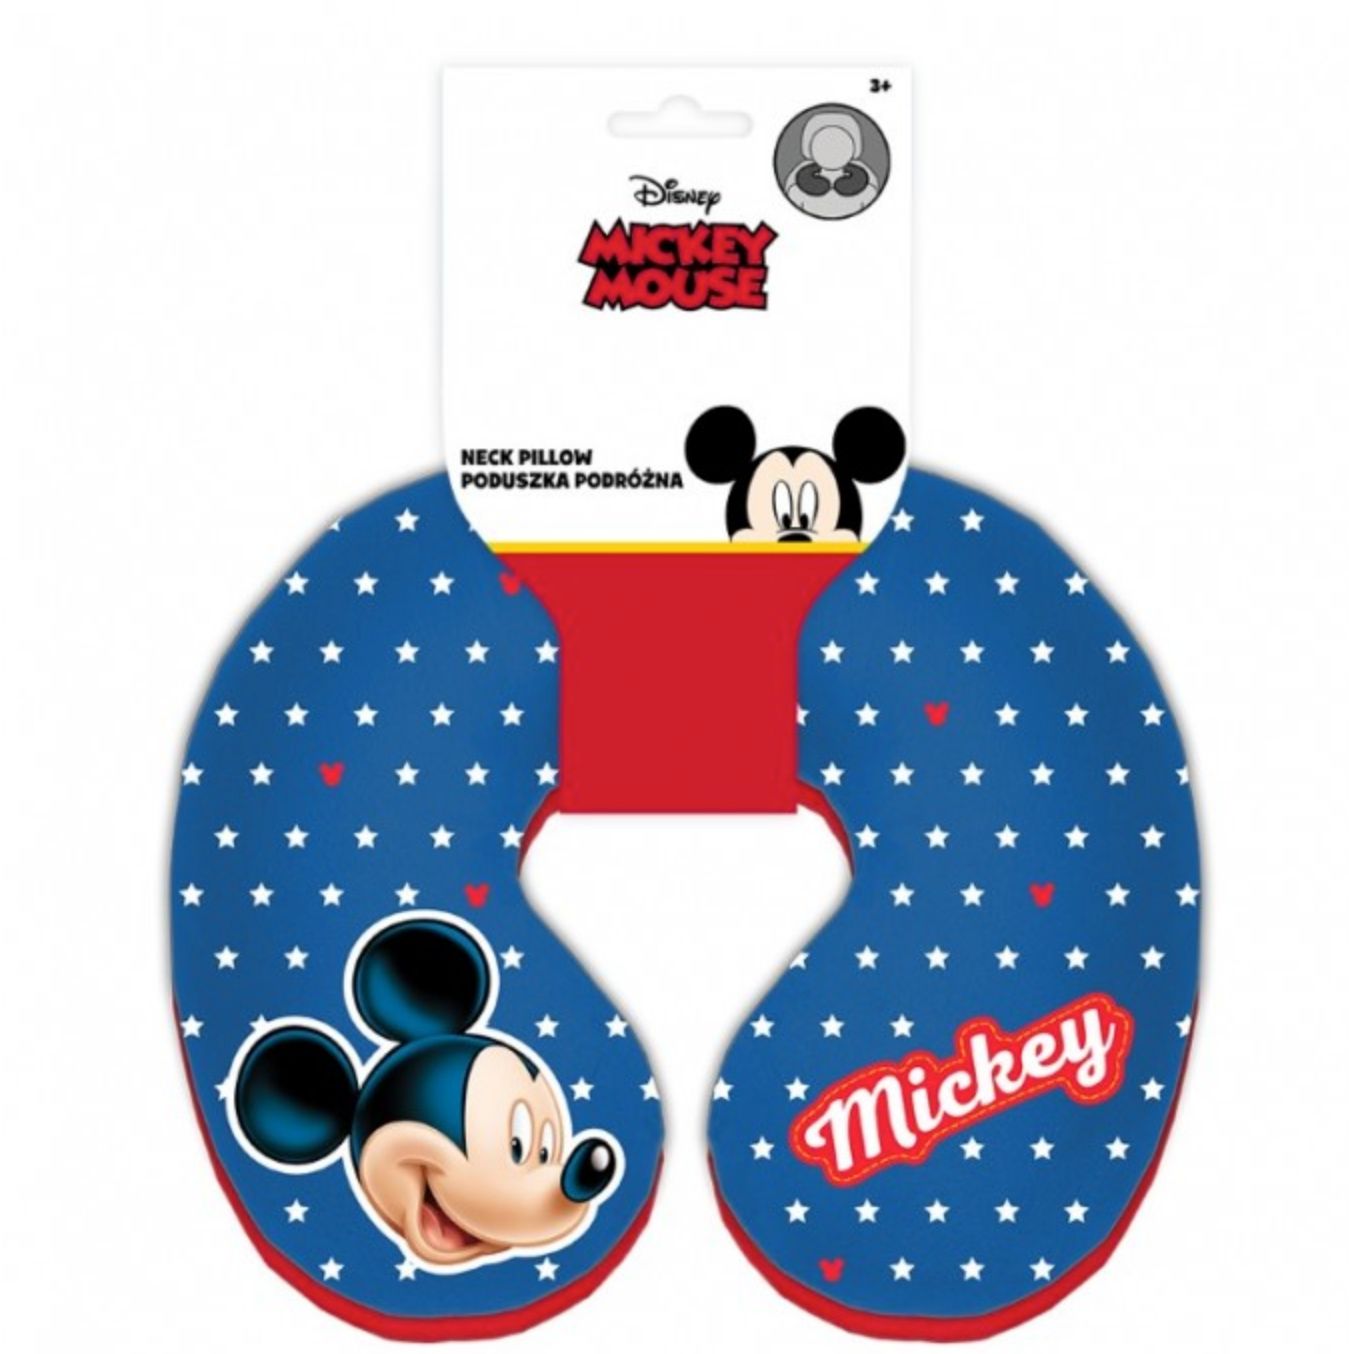 Cestovní polštářek Mickey Mouse